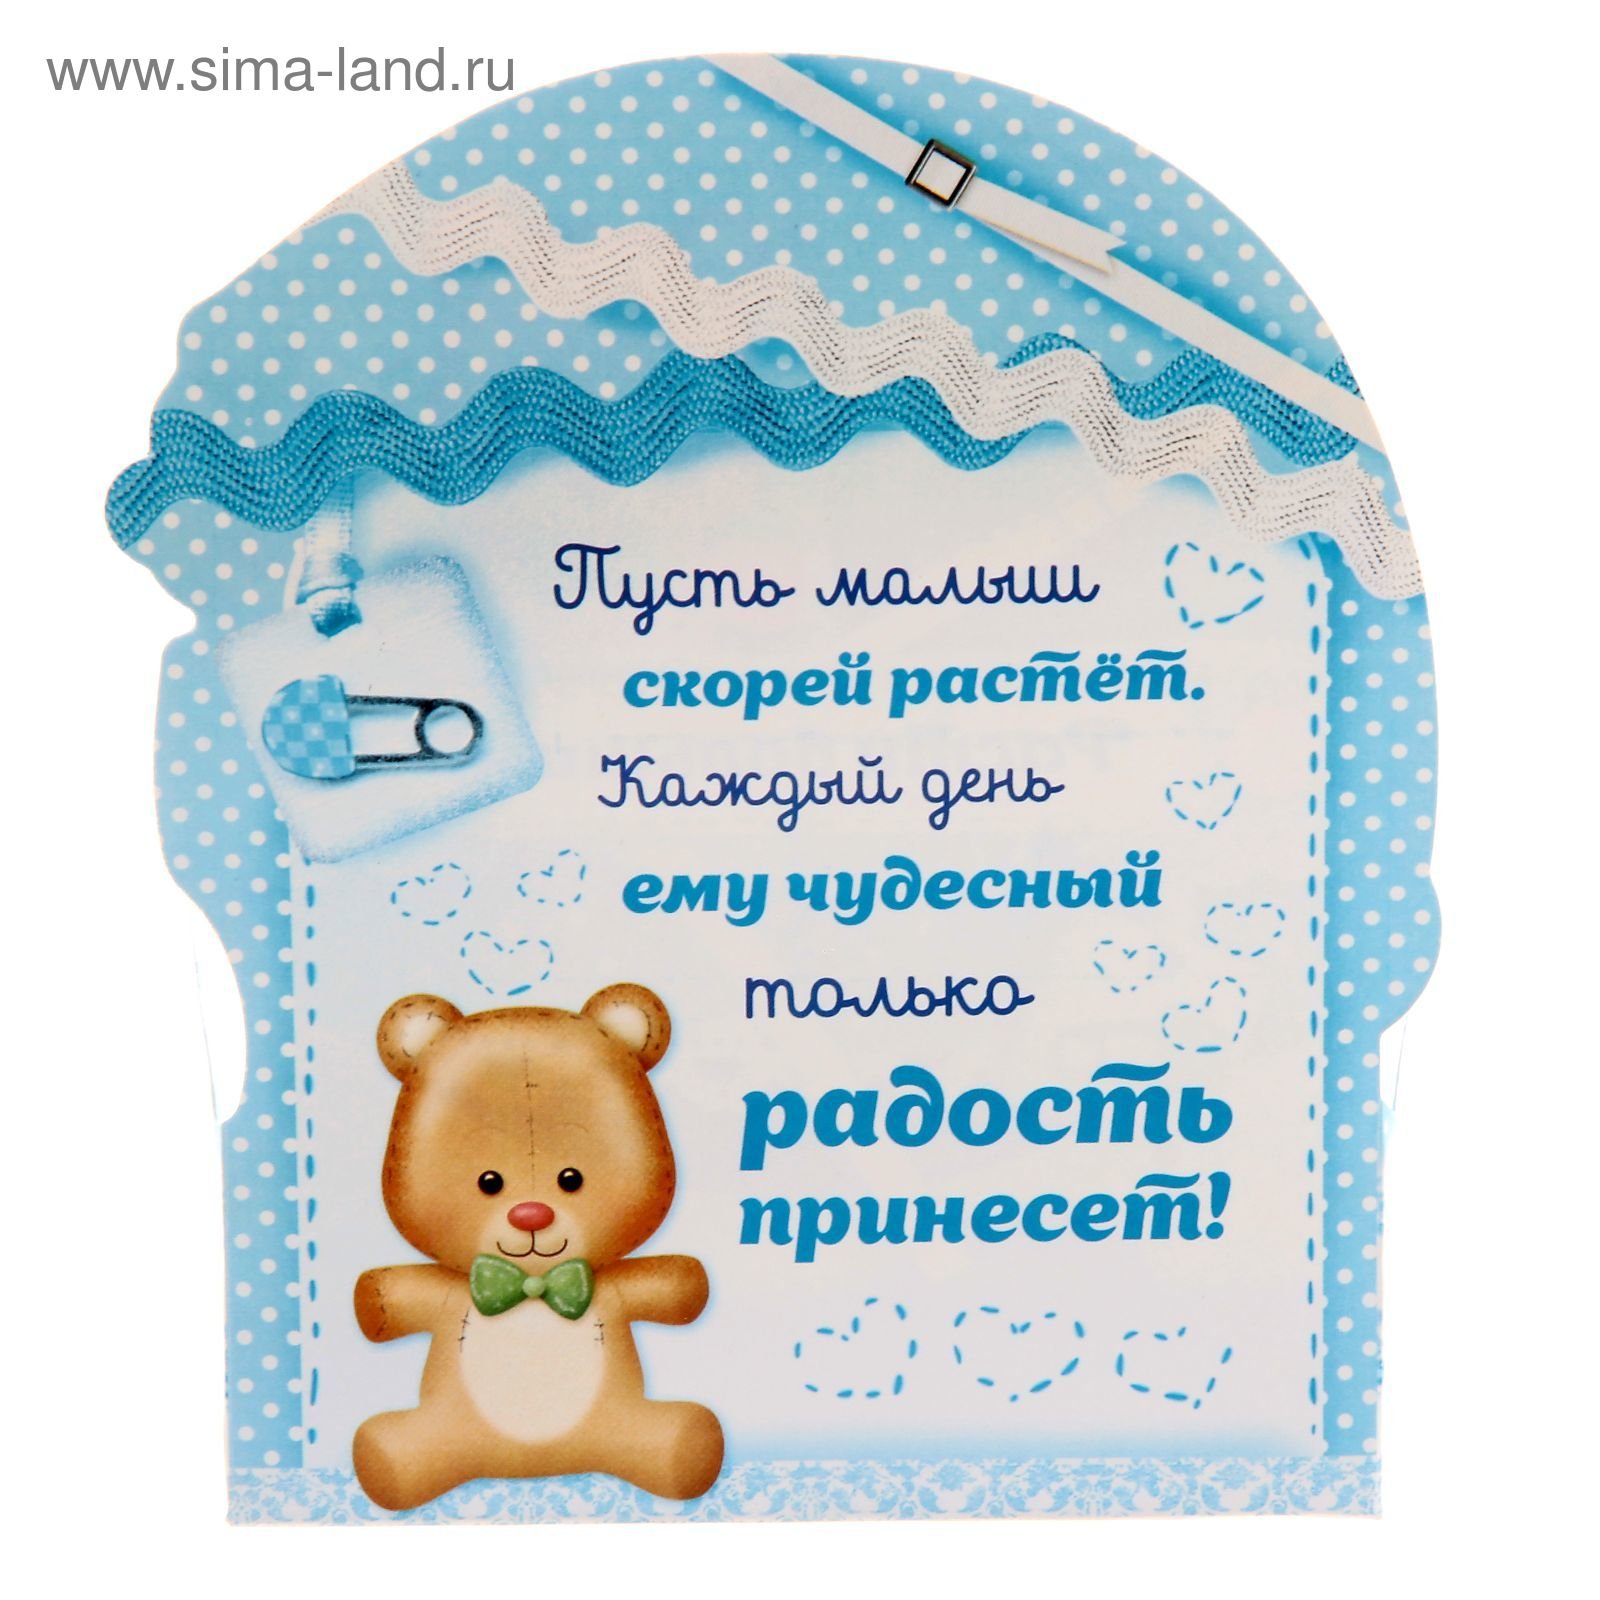 Поздравление с 1 месяцем в открытке - скачать бесплатно на сайте вороковский.рф